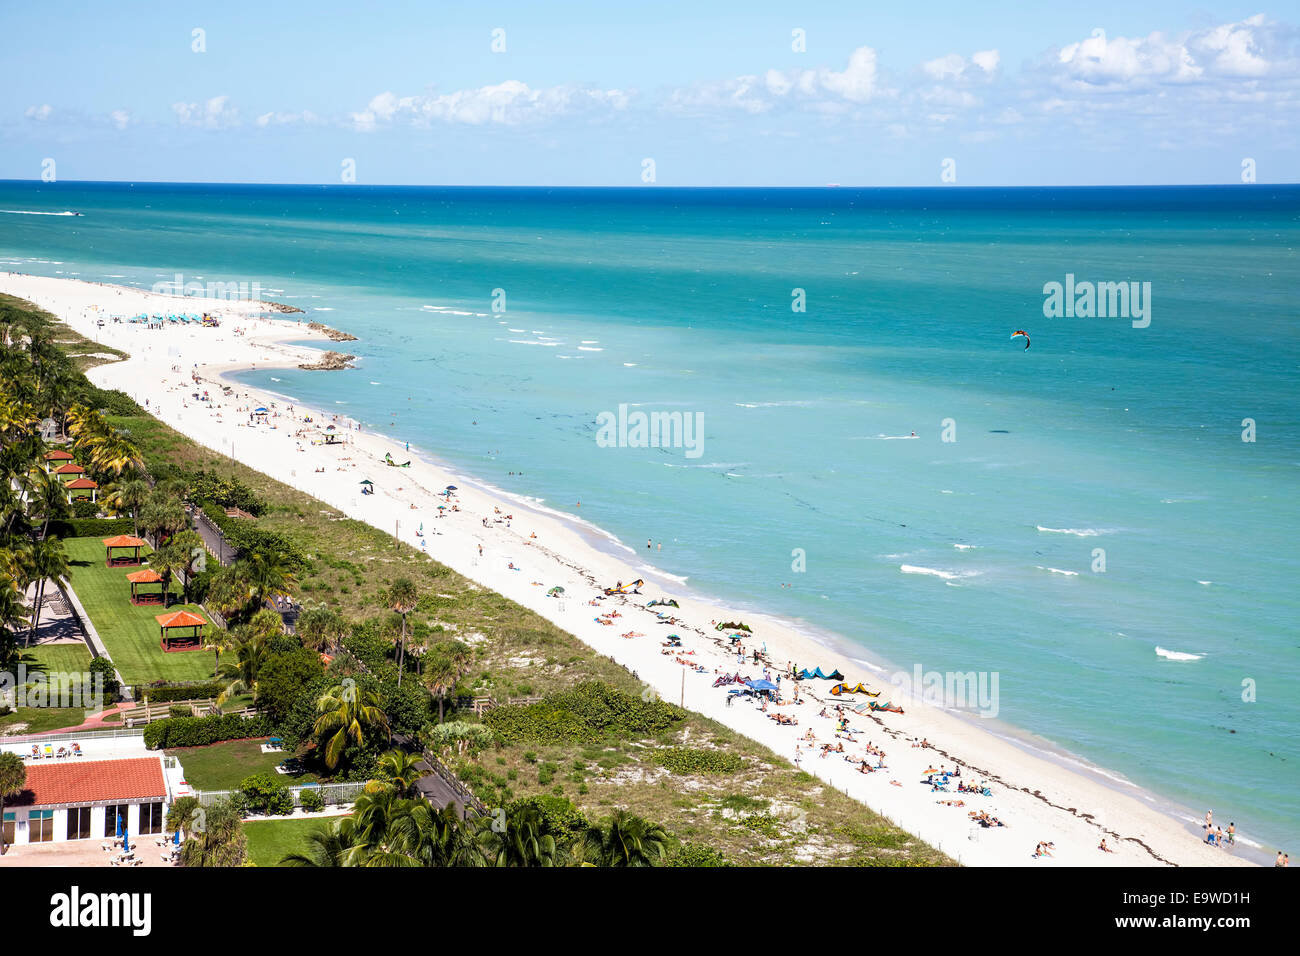 Vista aérea de bañistas, nadadores, surf y cabañas a lo largo de South Beach, Miami Beach, Florida, Estados Unidos. Foto de stock